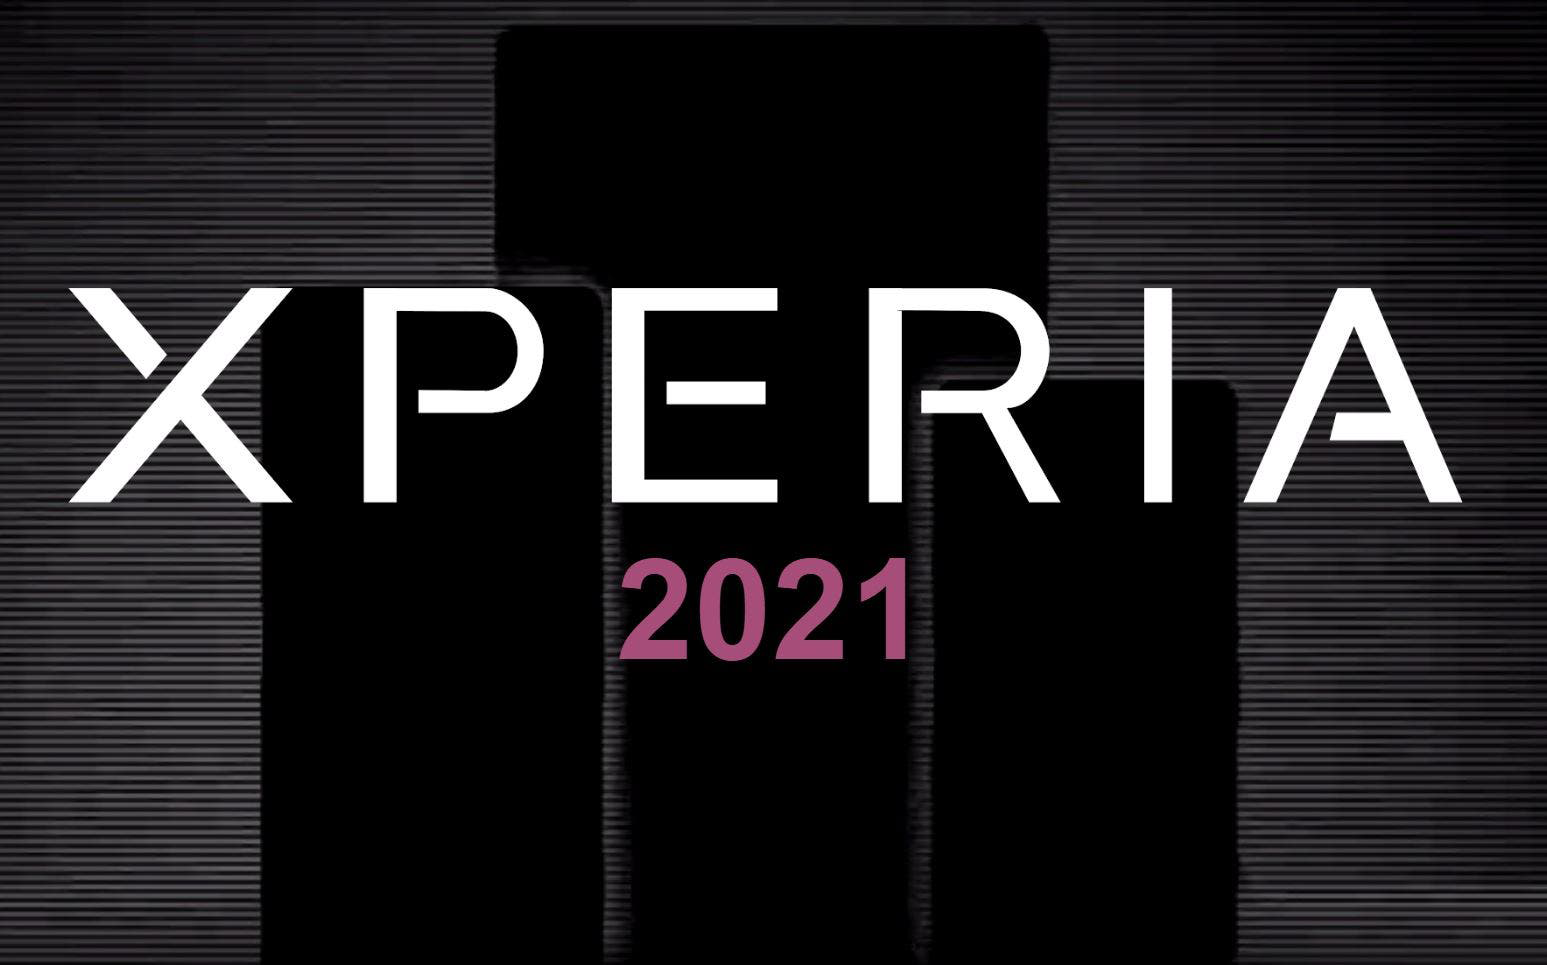 سوني تستعد للإعلان عن ثلاثة إصدارات من الهواتف الذكية المميزة في 2021